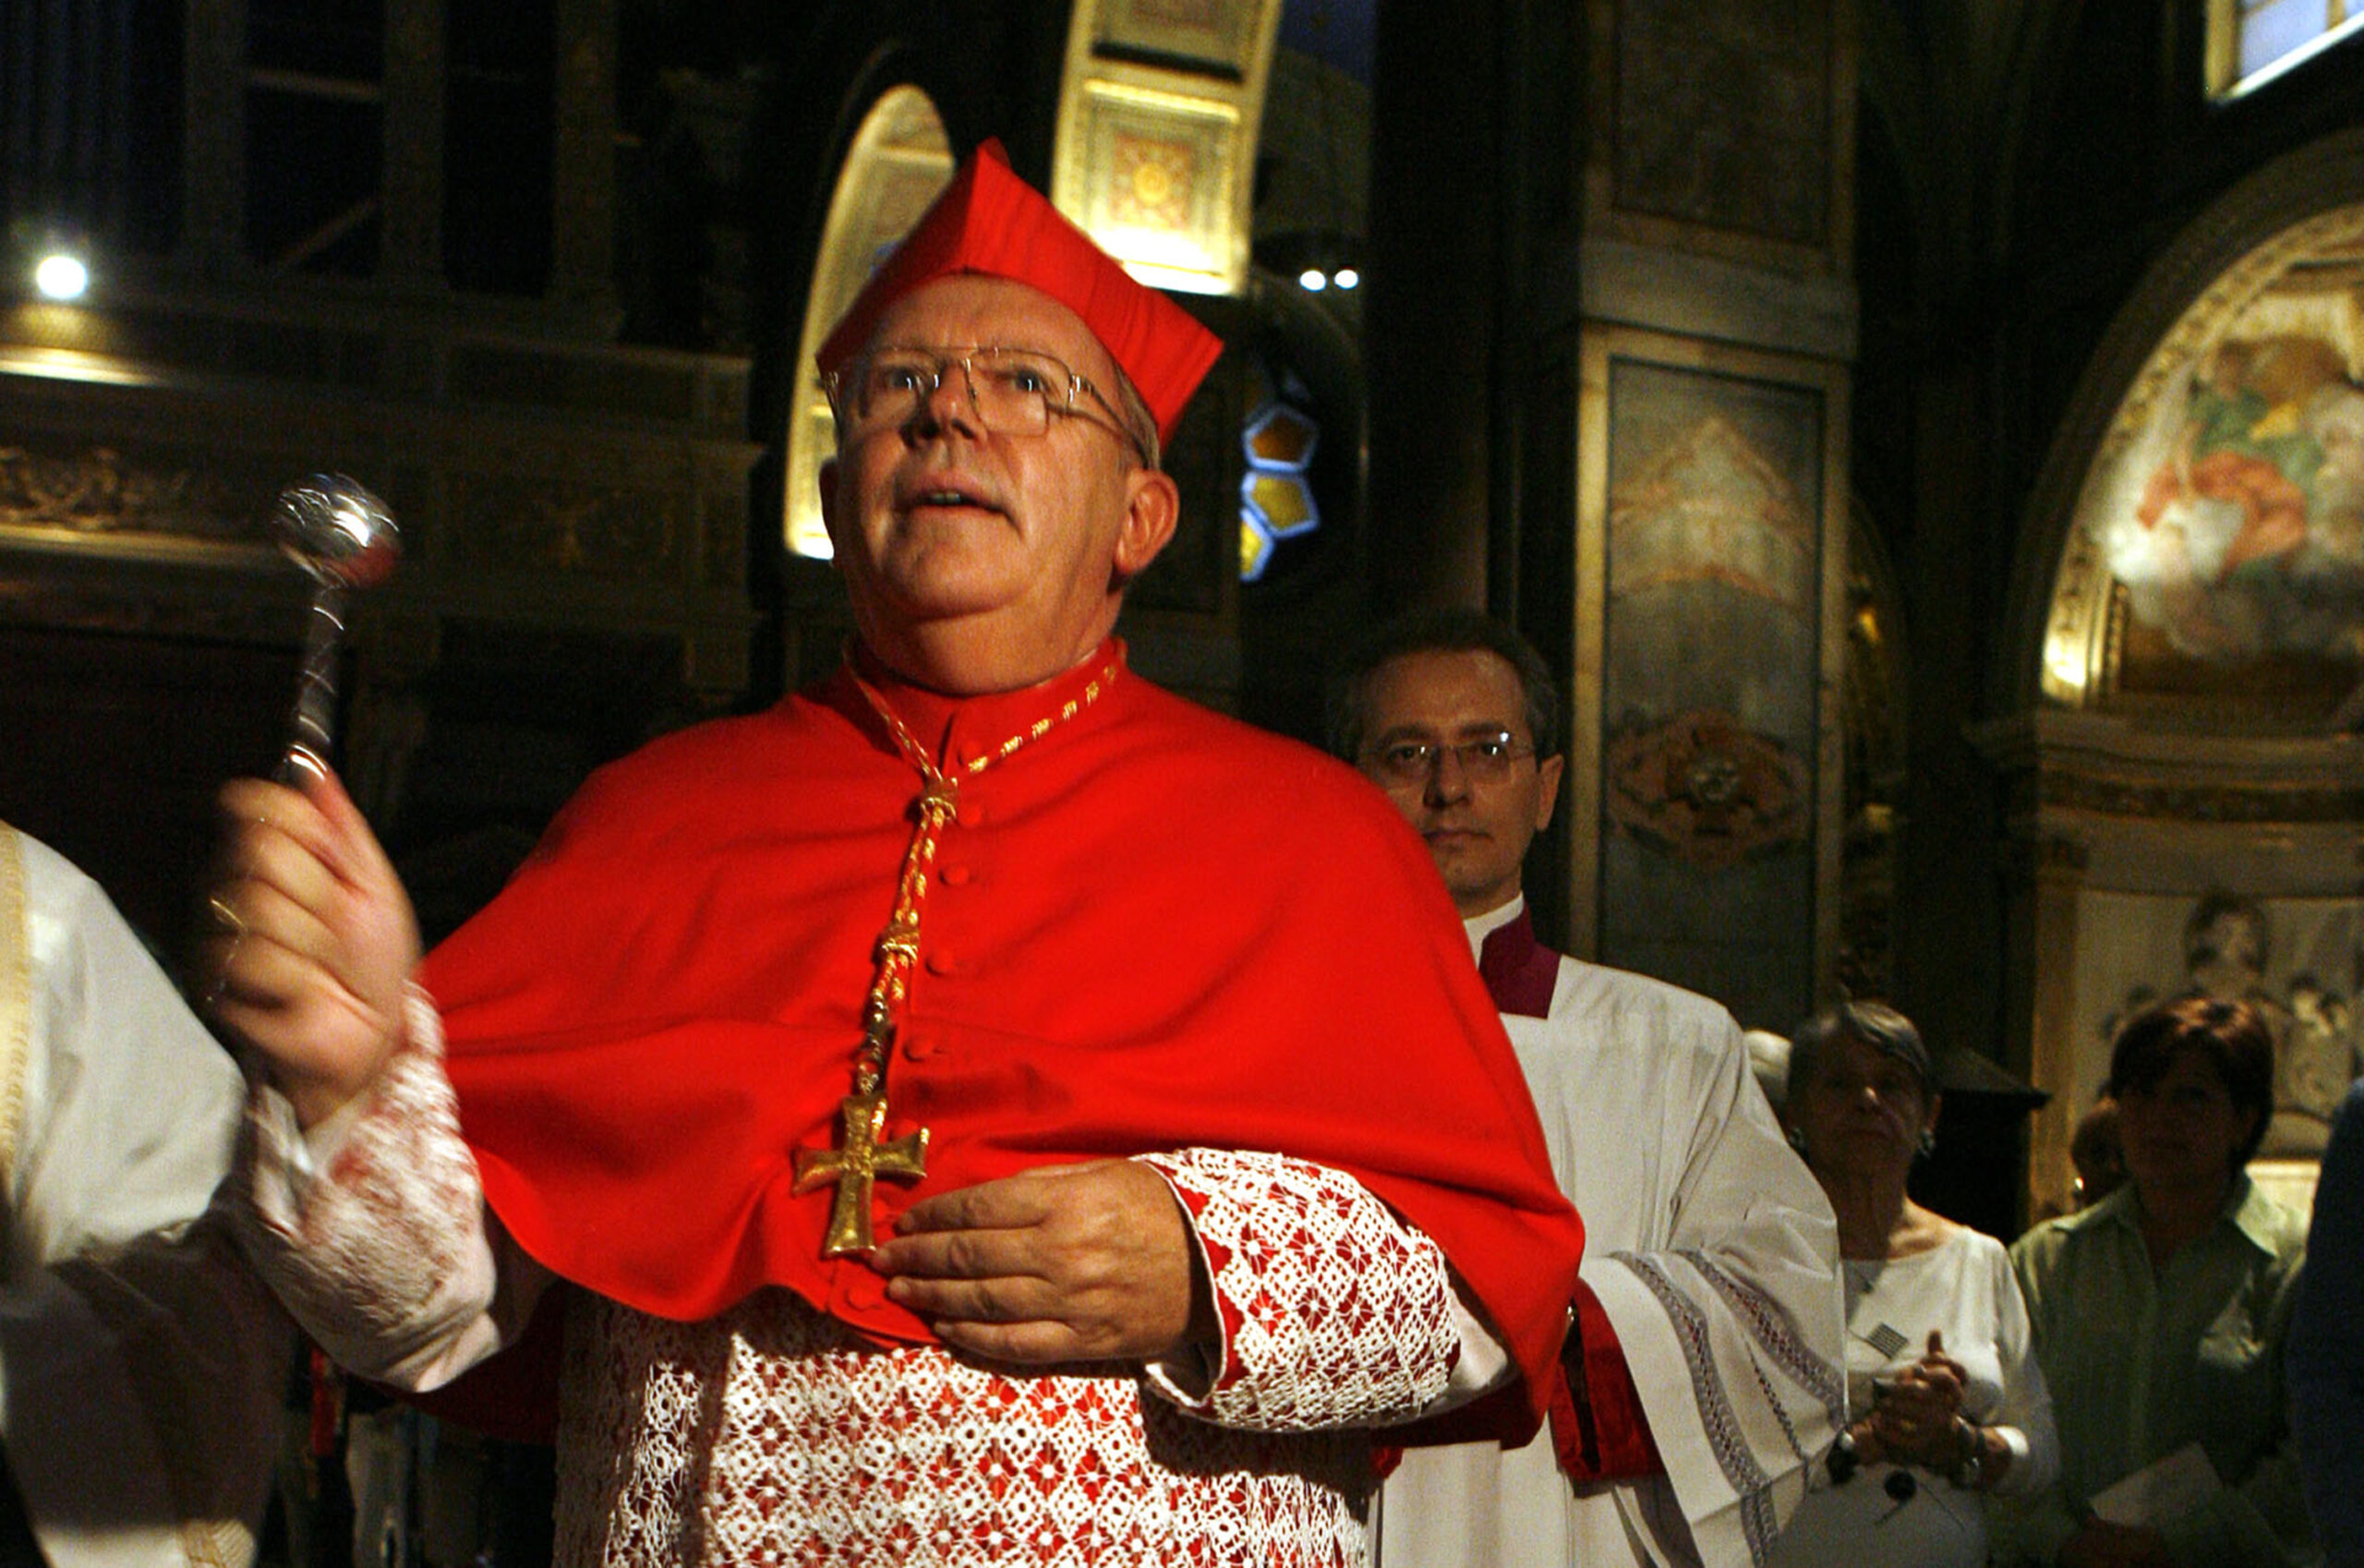 Der emeritierte Erzbischof Jean-Pierre Ricard gestand den sexuellen Missbrauch einer 14-Jährigen (Archivbild).